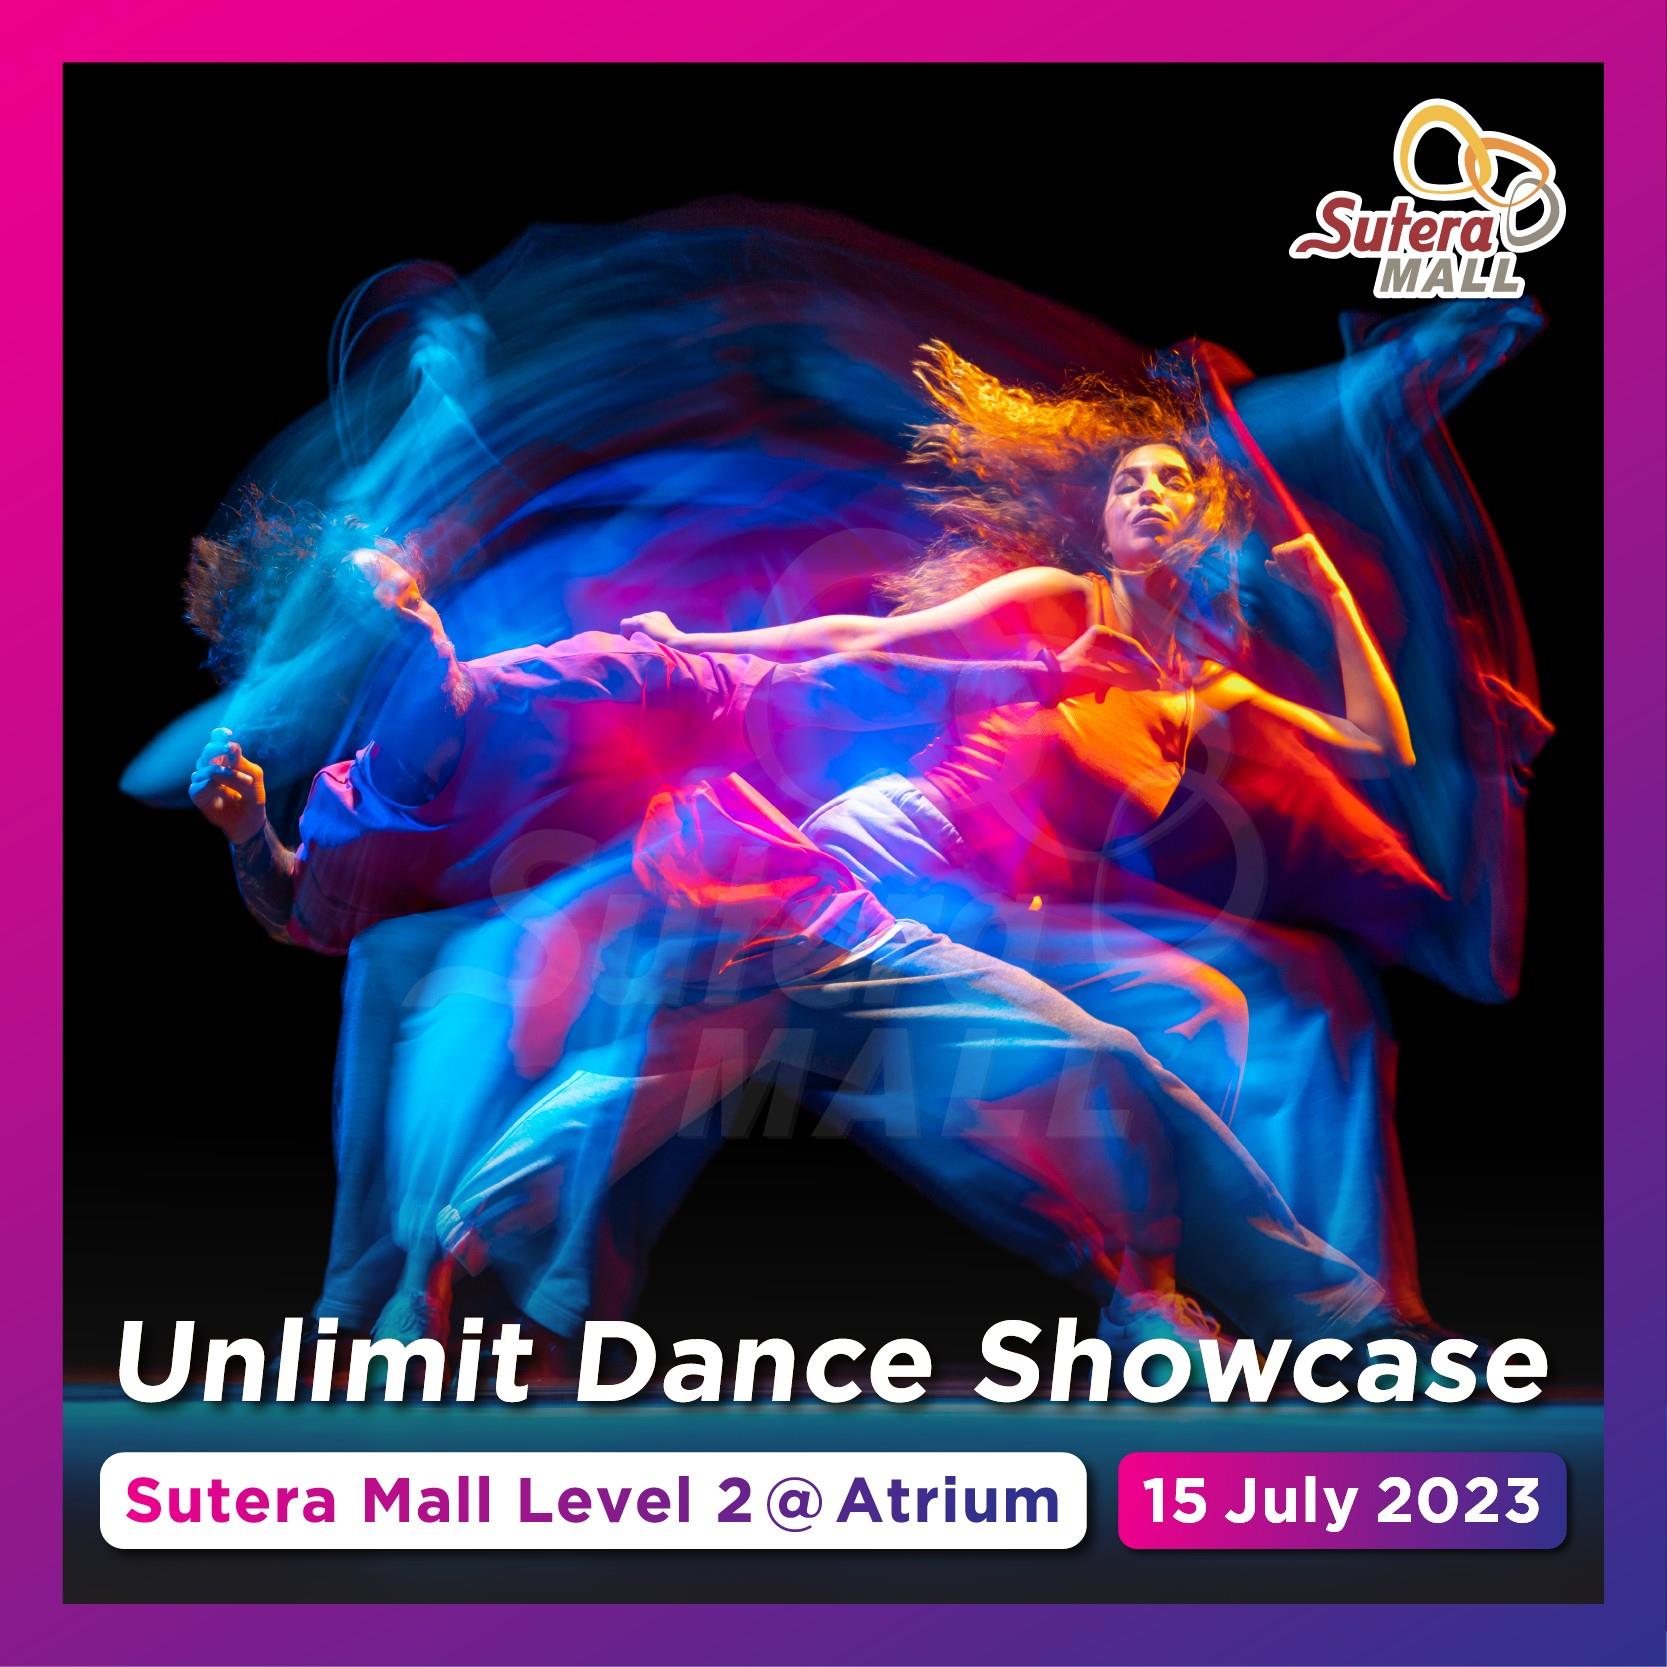 <div class='event-date'>15 Jul 2023</div><div class='event-title'><h4>Unlimit Dance Showcase</h4></div>